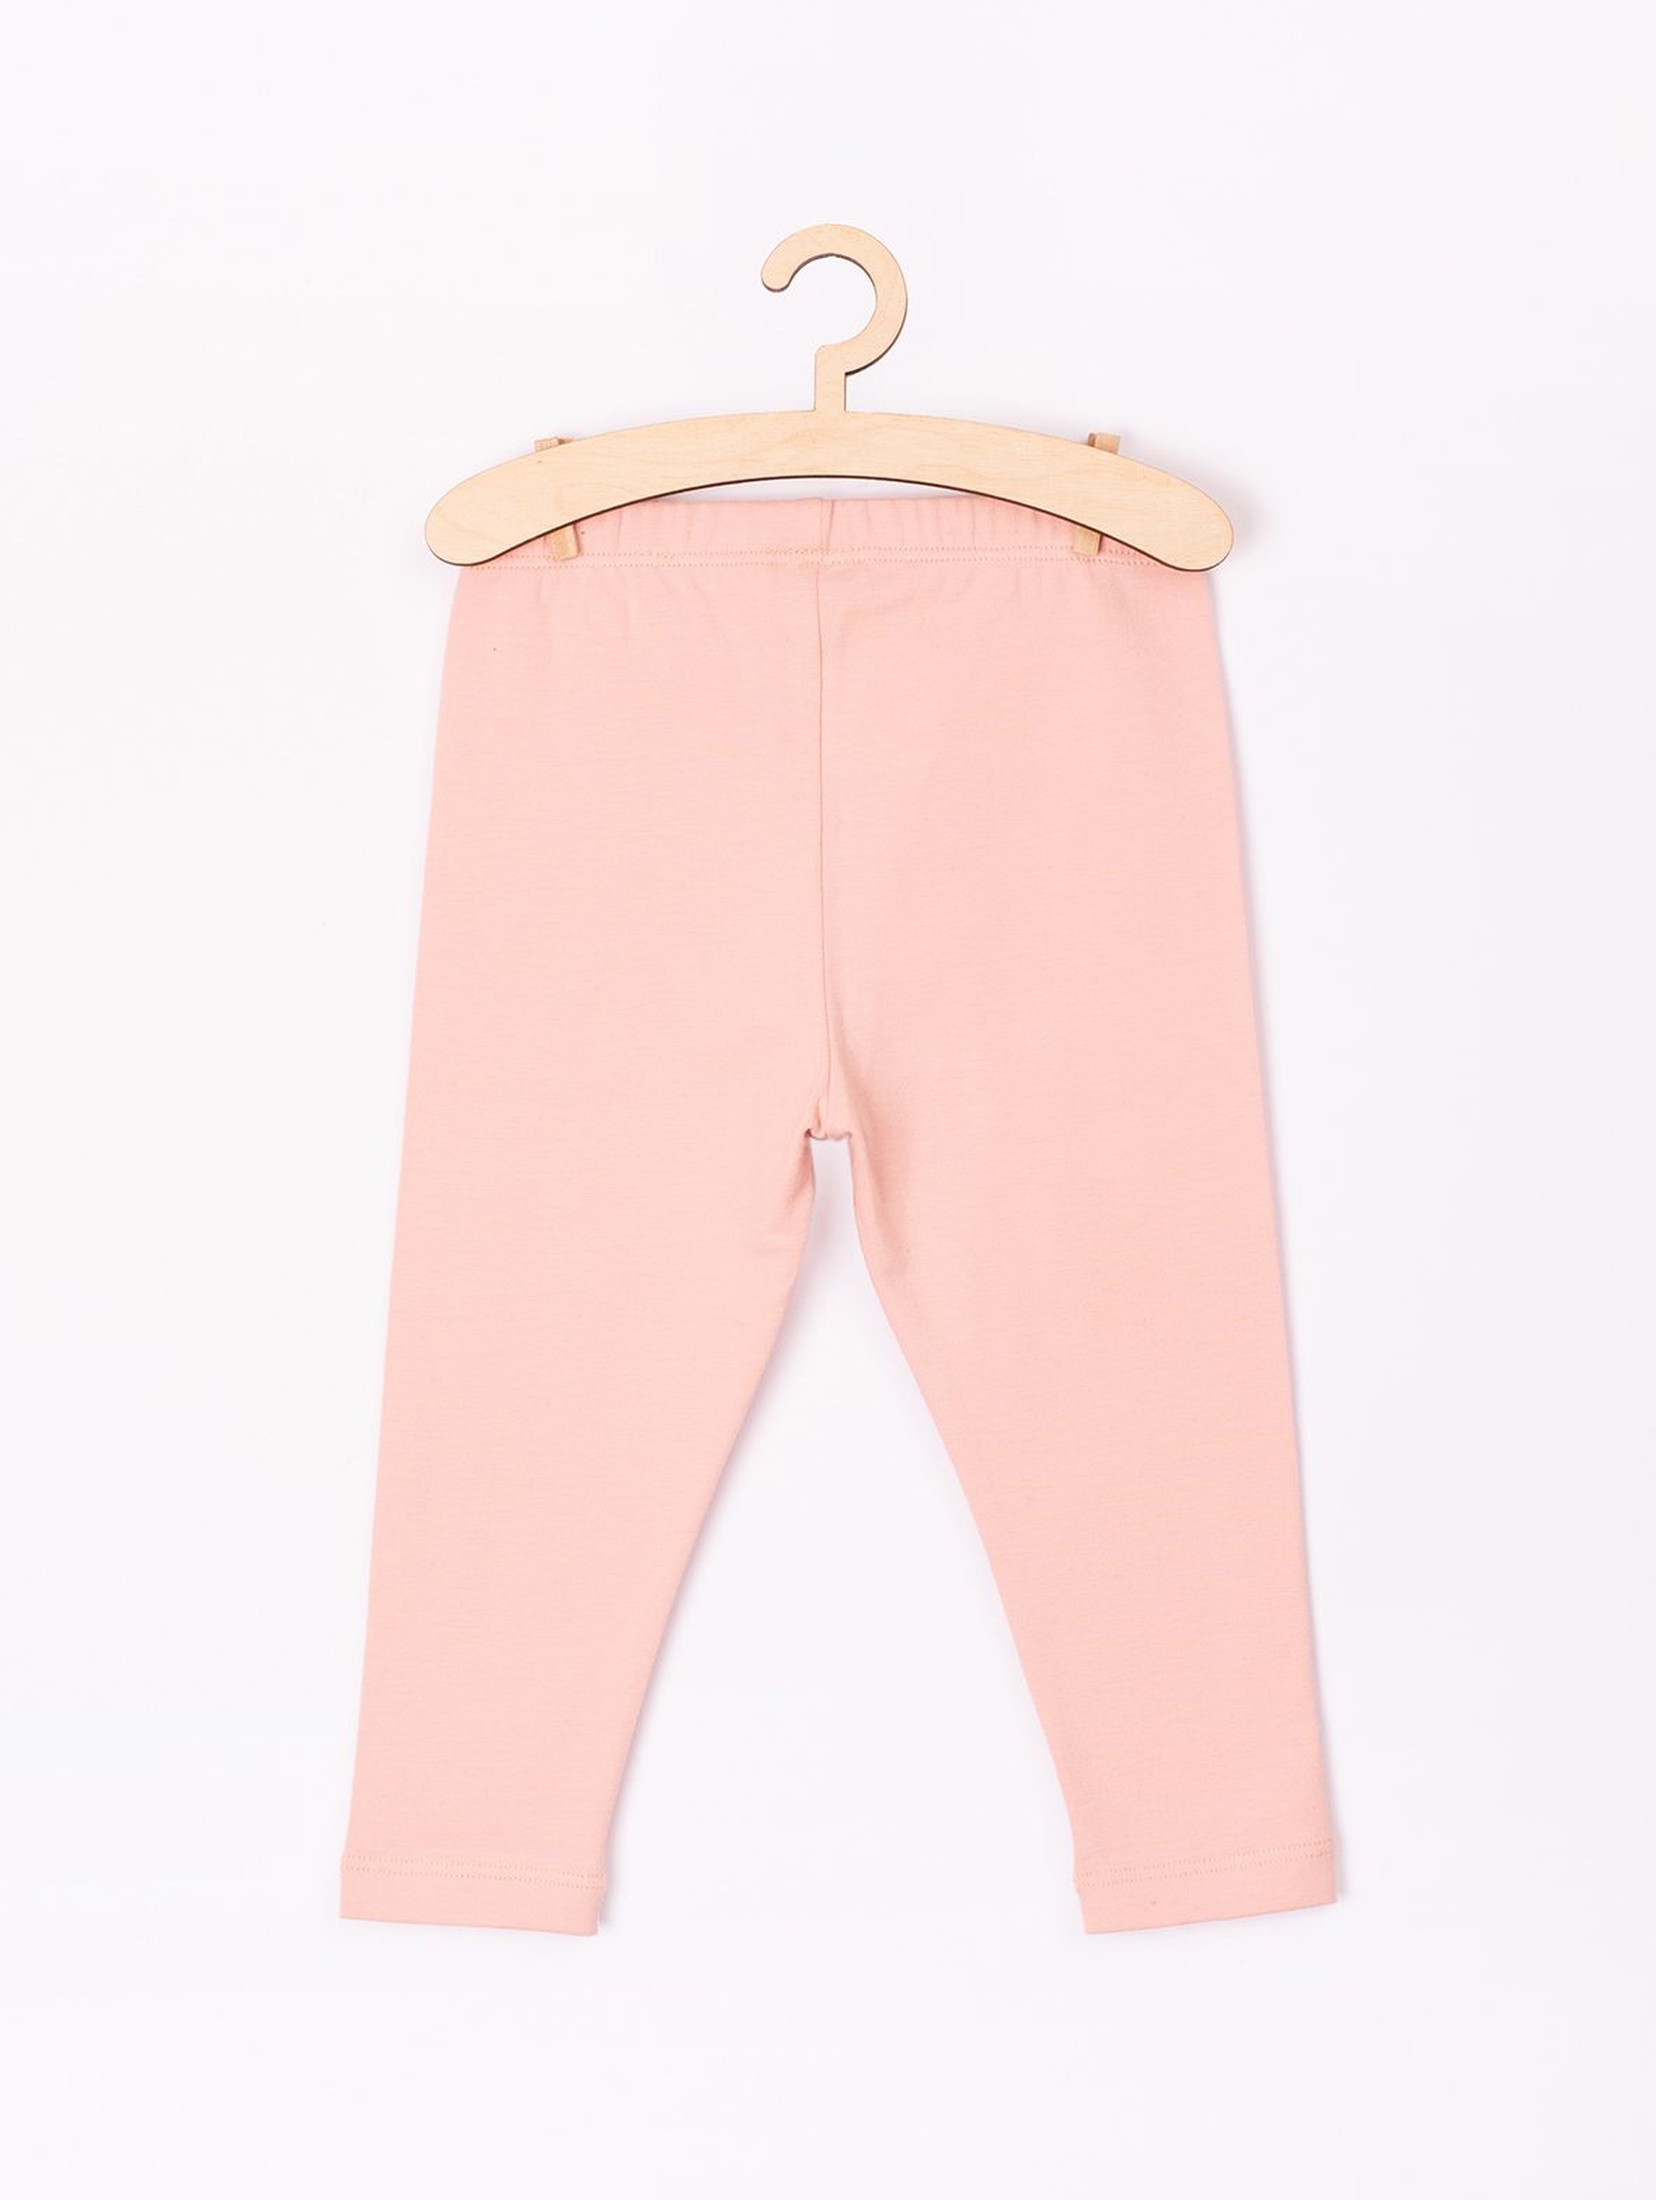 Spodnie niemowlęce różowe z serduszkami na kolanach